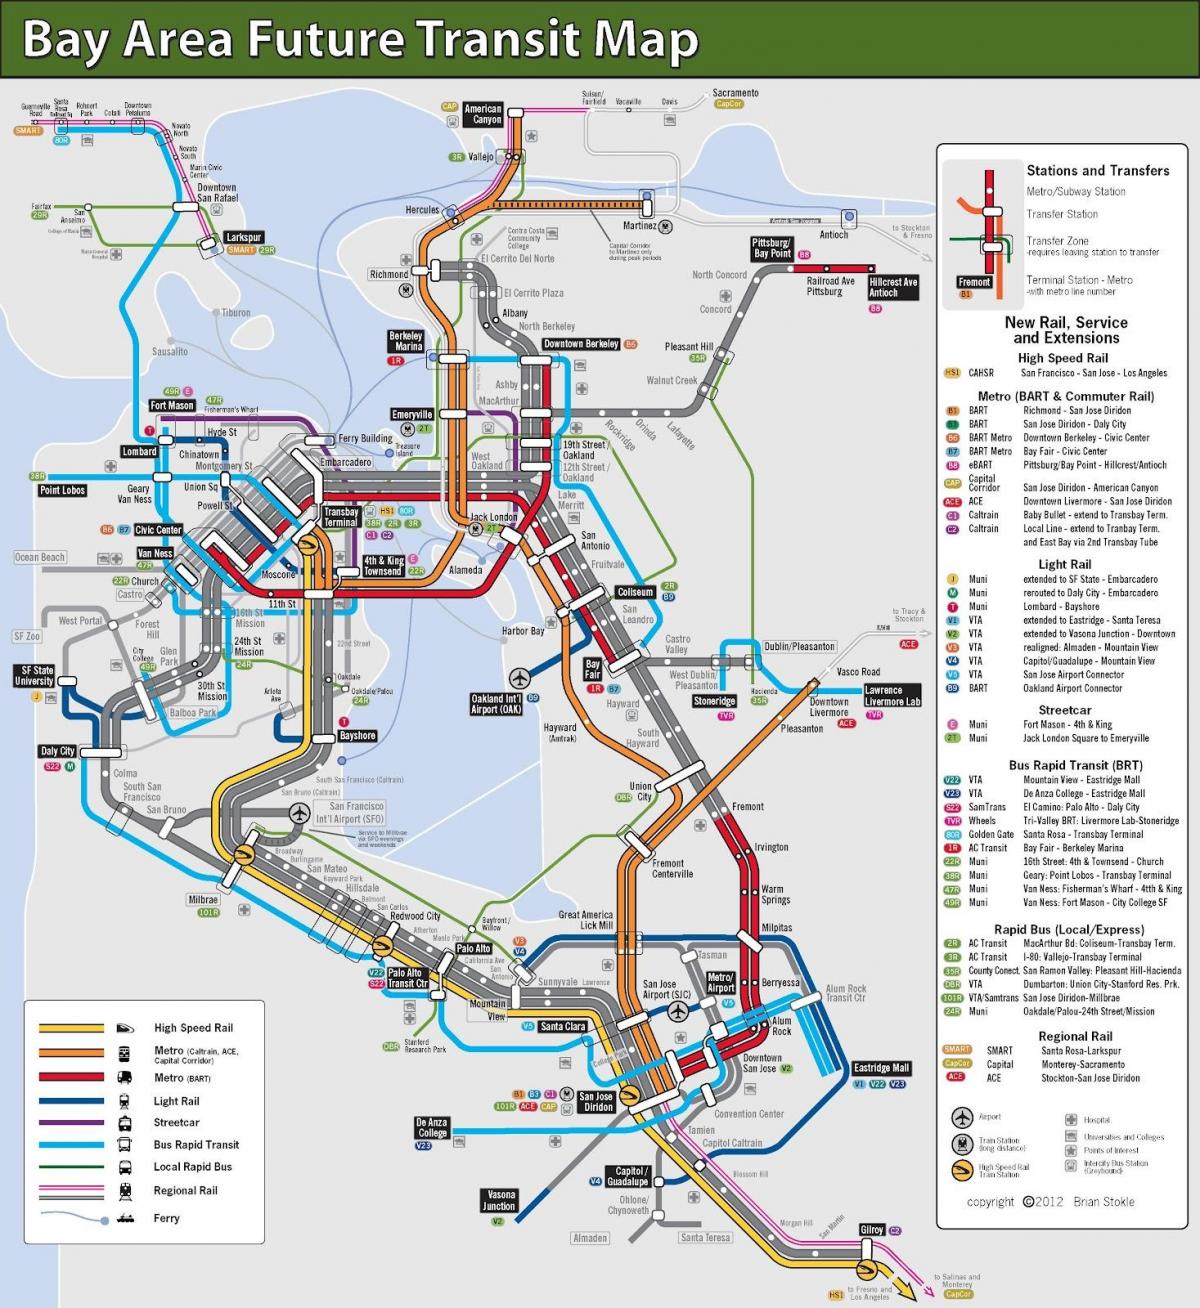 Сан-Франциско громадського транспорту карті